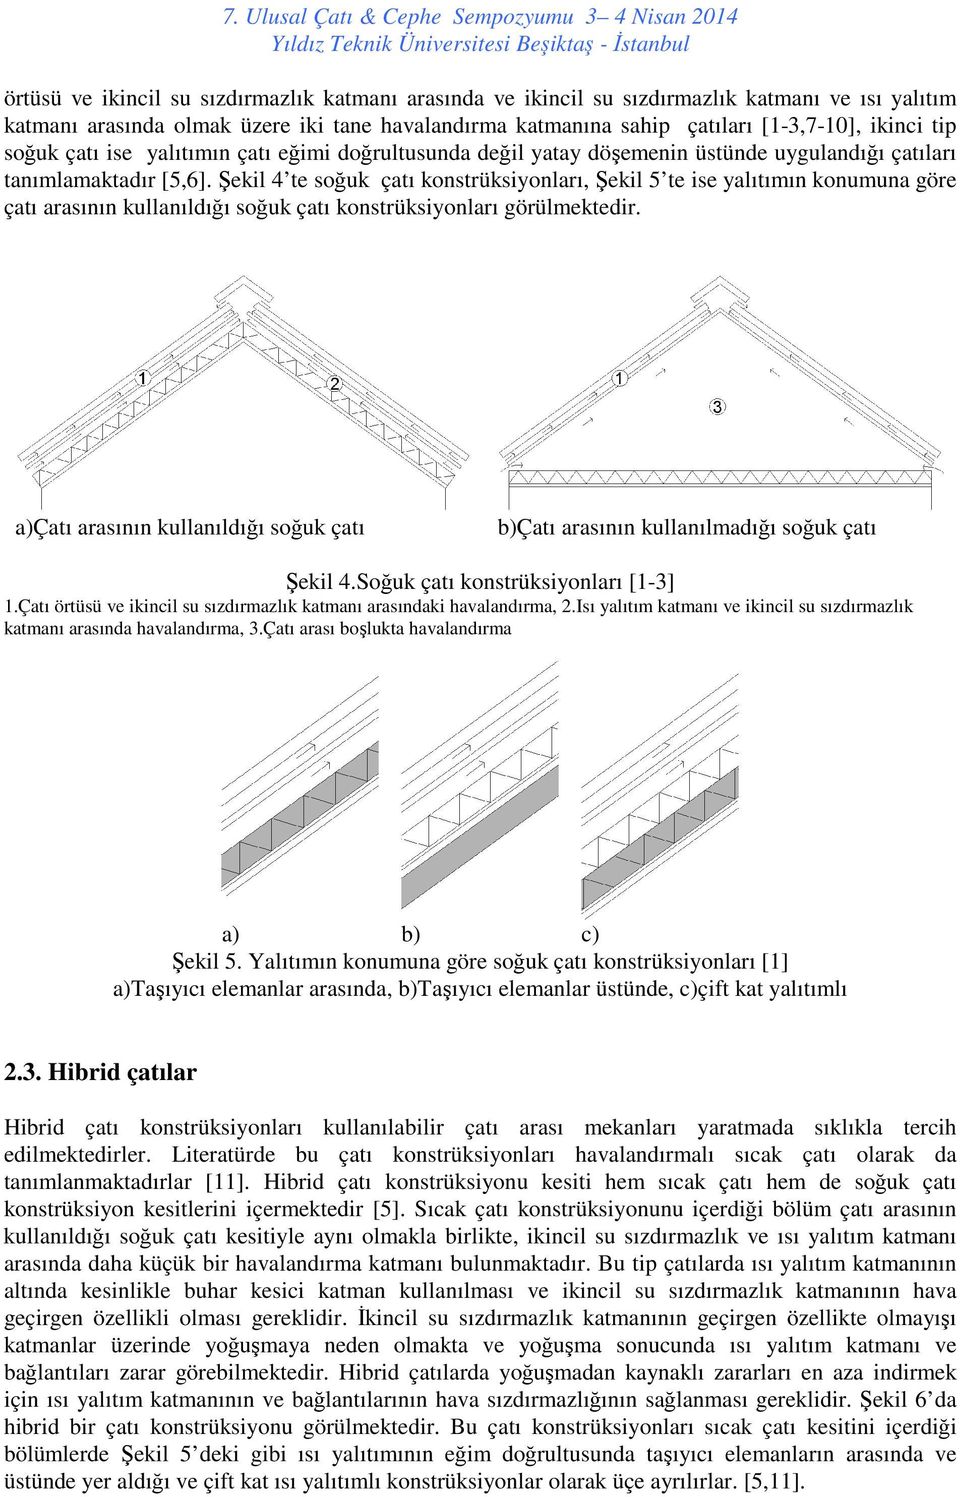 Şekil 4 te soğuk çatı konstrüksiyonları, Şekil 5 te ise yalıtımın konumuna göre çatı arasının kullanıldığı soğuk çatı konstrüksiyonları görülmektedir.